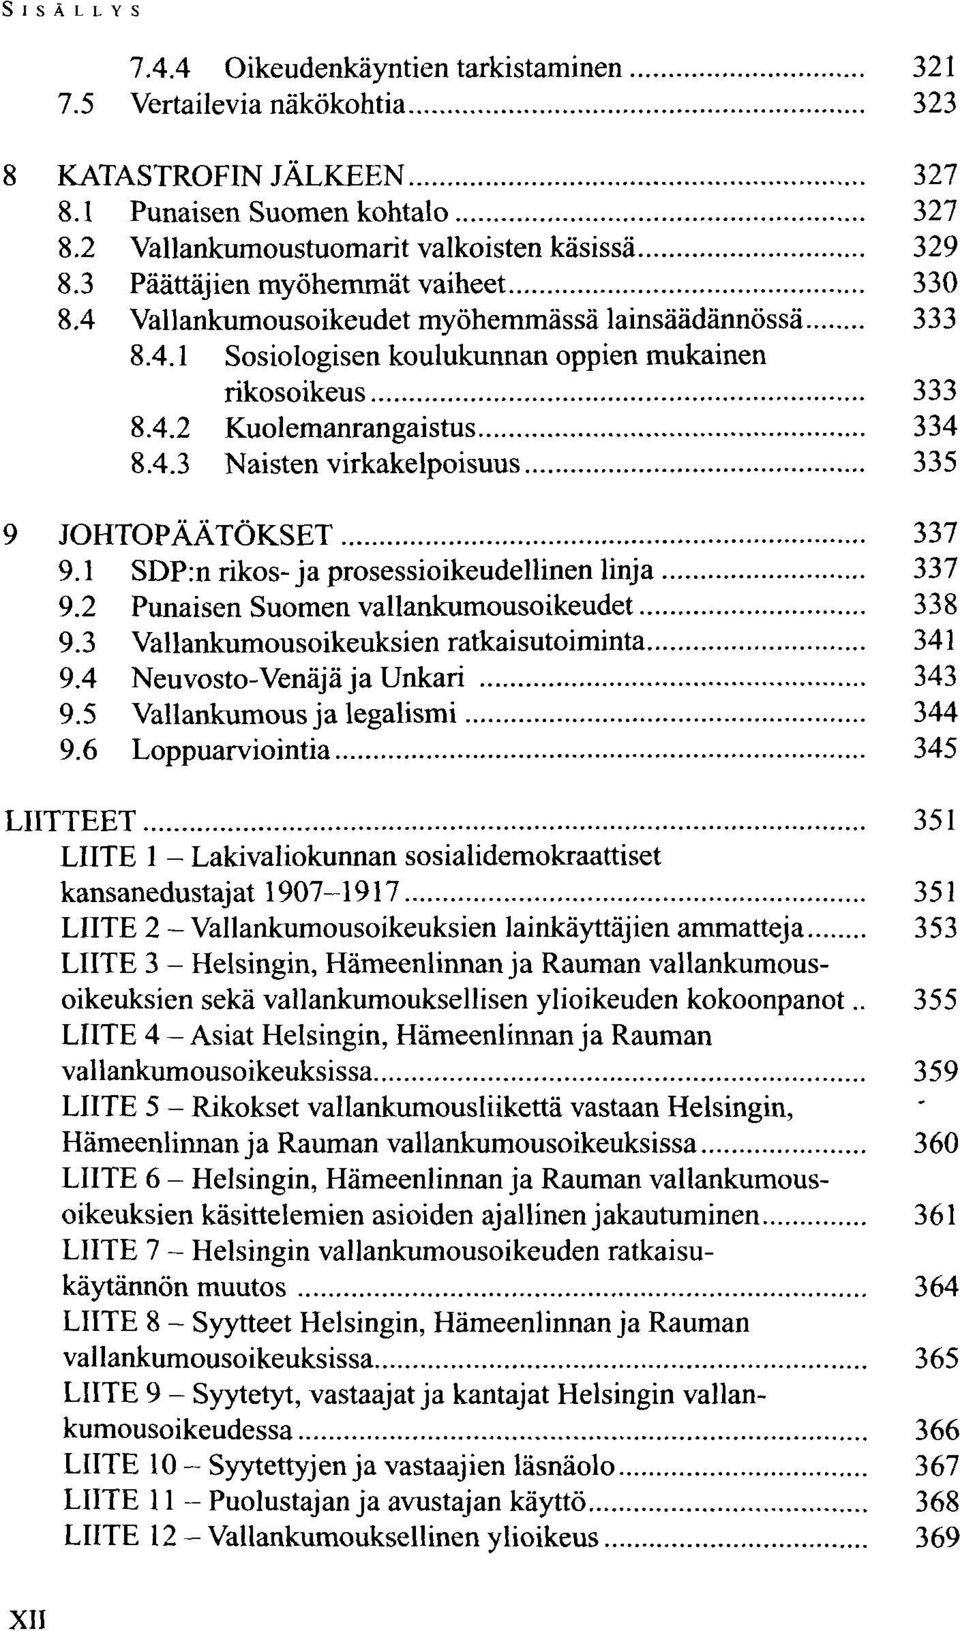 1 SDP:n rikos-ja prosessioikeudellinen linja 337 9.2 Punaisen Suomen vallankumousoikeudet 338 9.3 Vallankumousoikeuksien ratkaisutoiminta 341 9.4 Neuvosto-Venäjä ja Unkari 343 9.